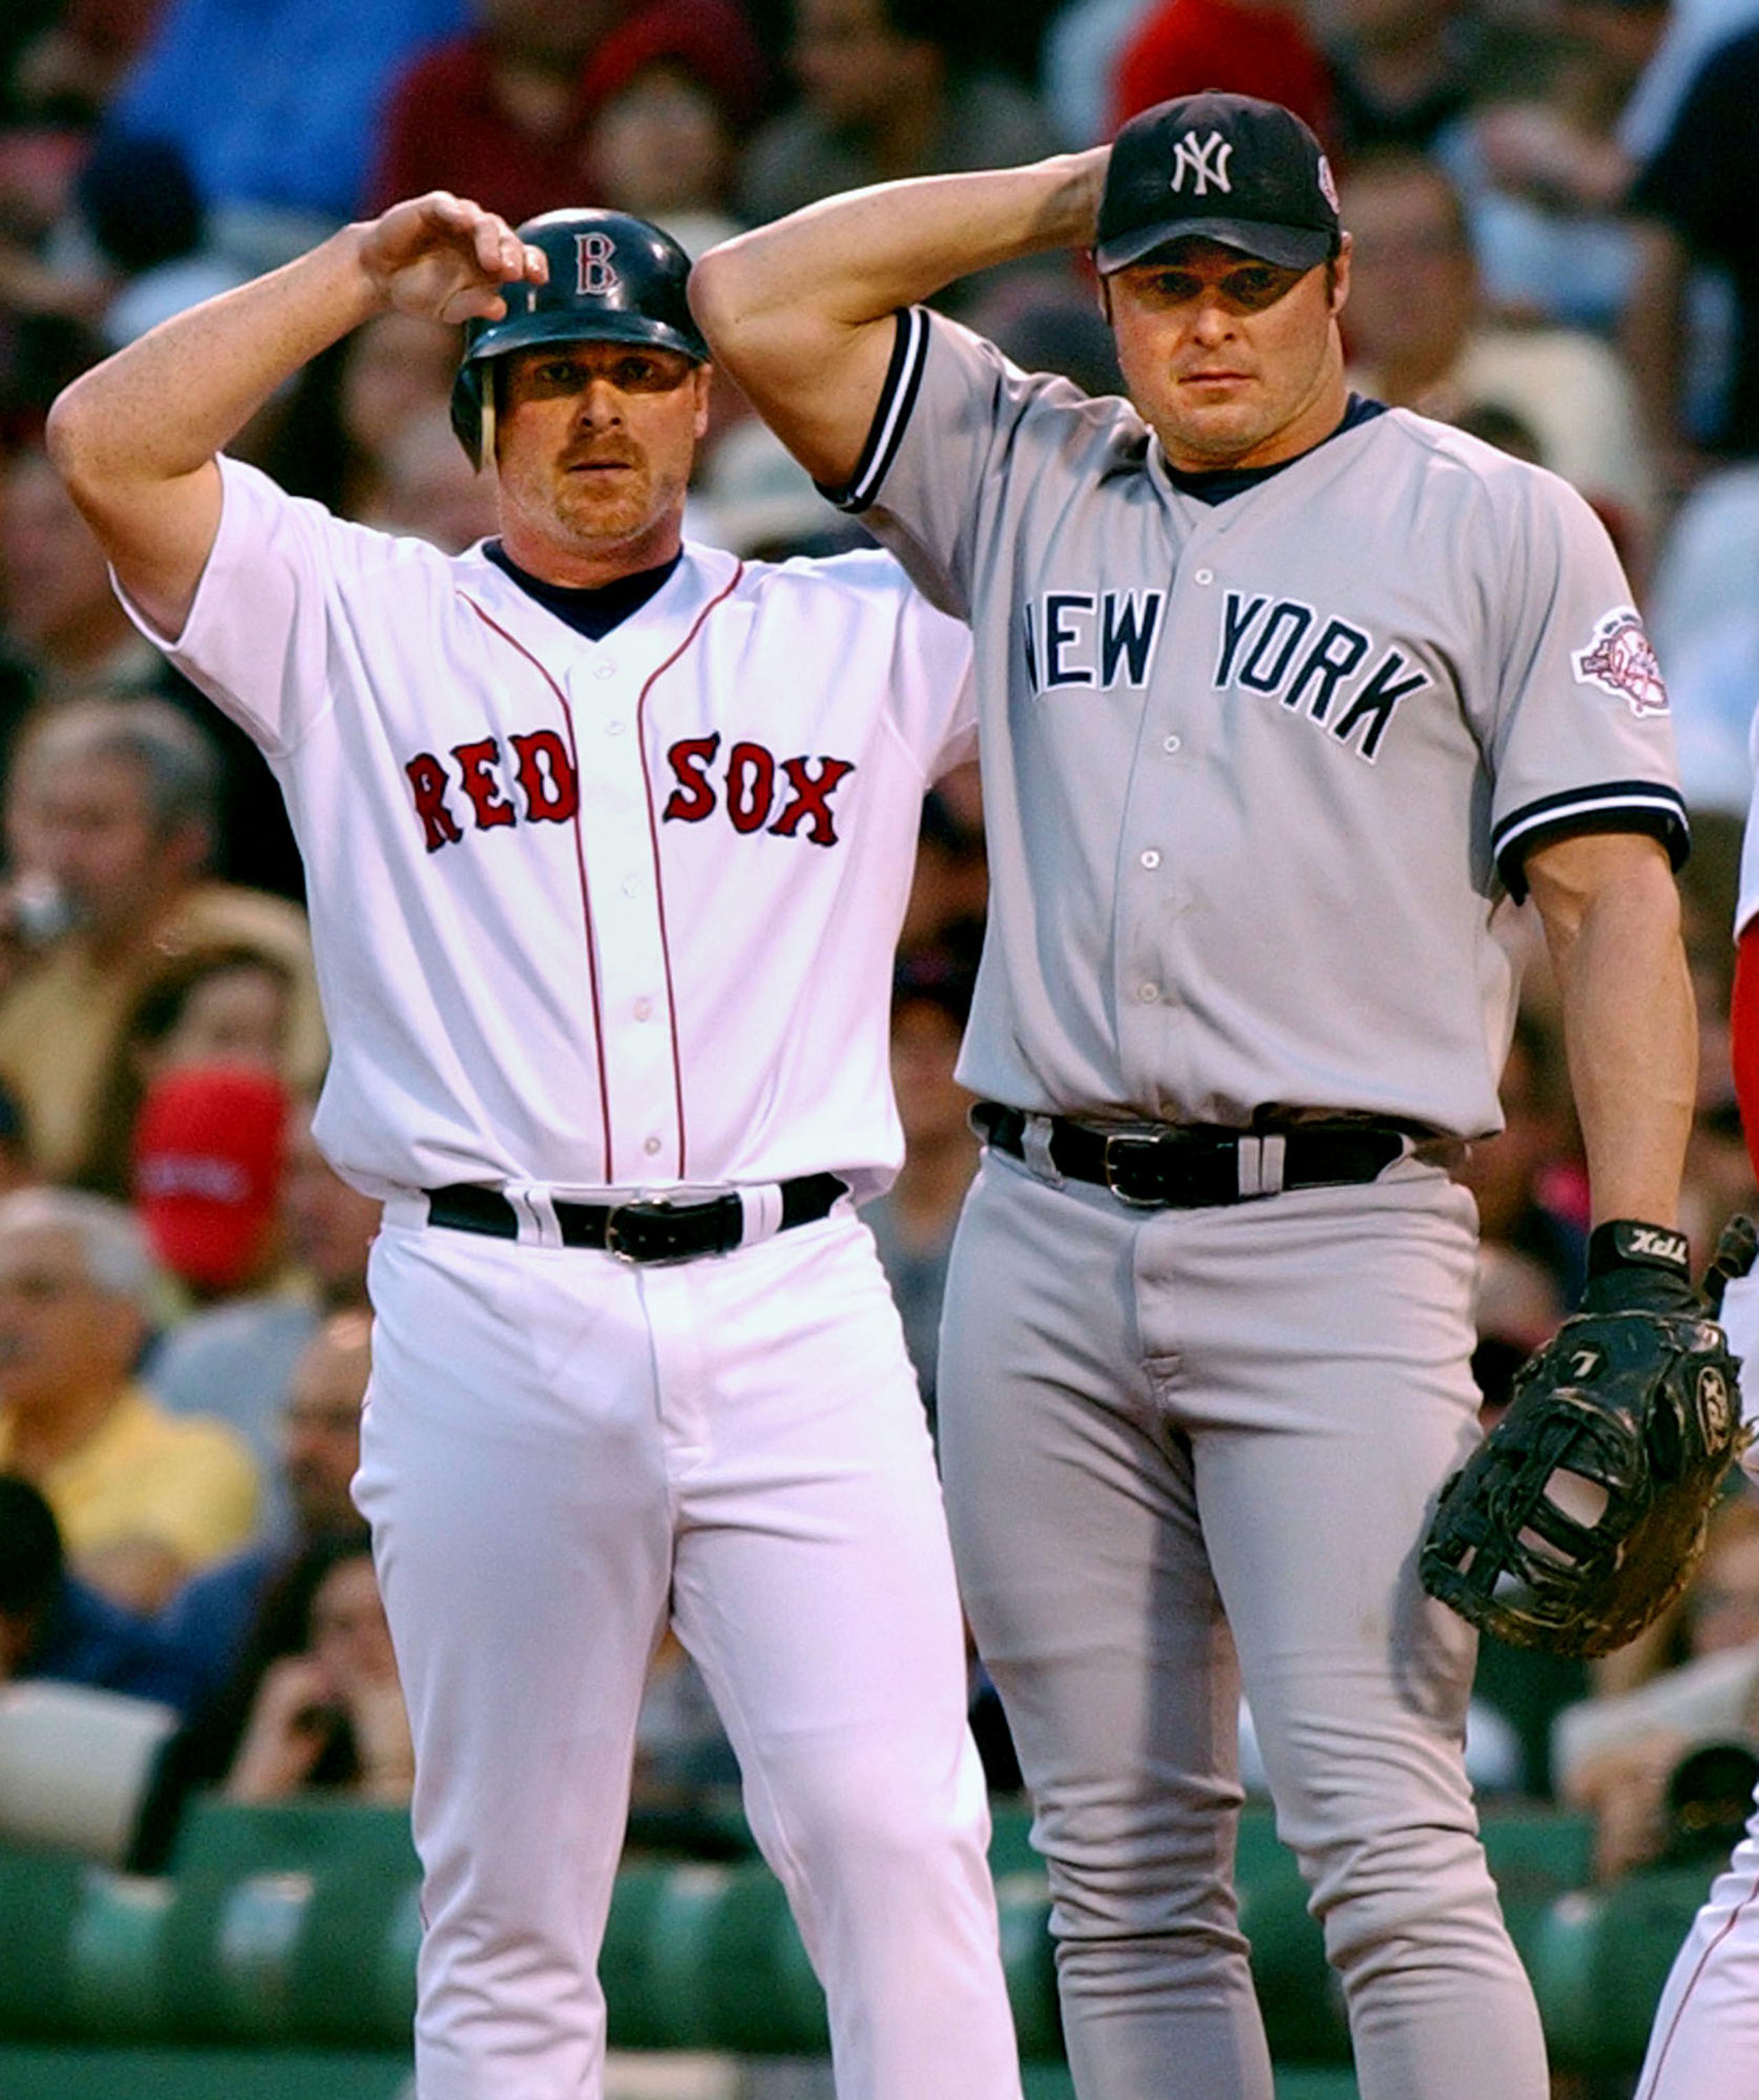 Jeremy Giambi, en uniforme de los Red Sox de Boston, junto a su hermano Jason Giambi, de los Yankees de Nueva York, en una foto del 2003.